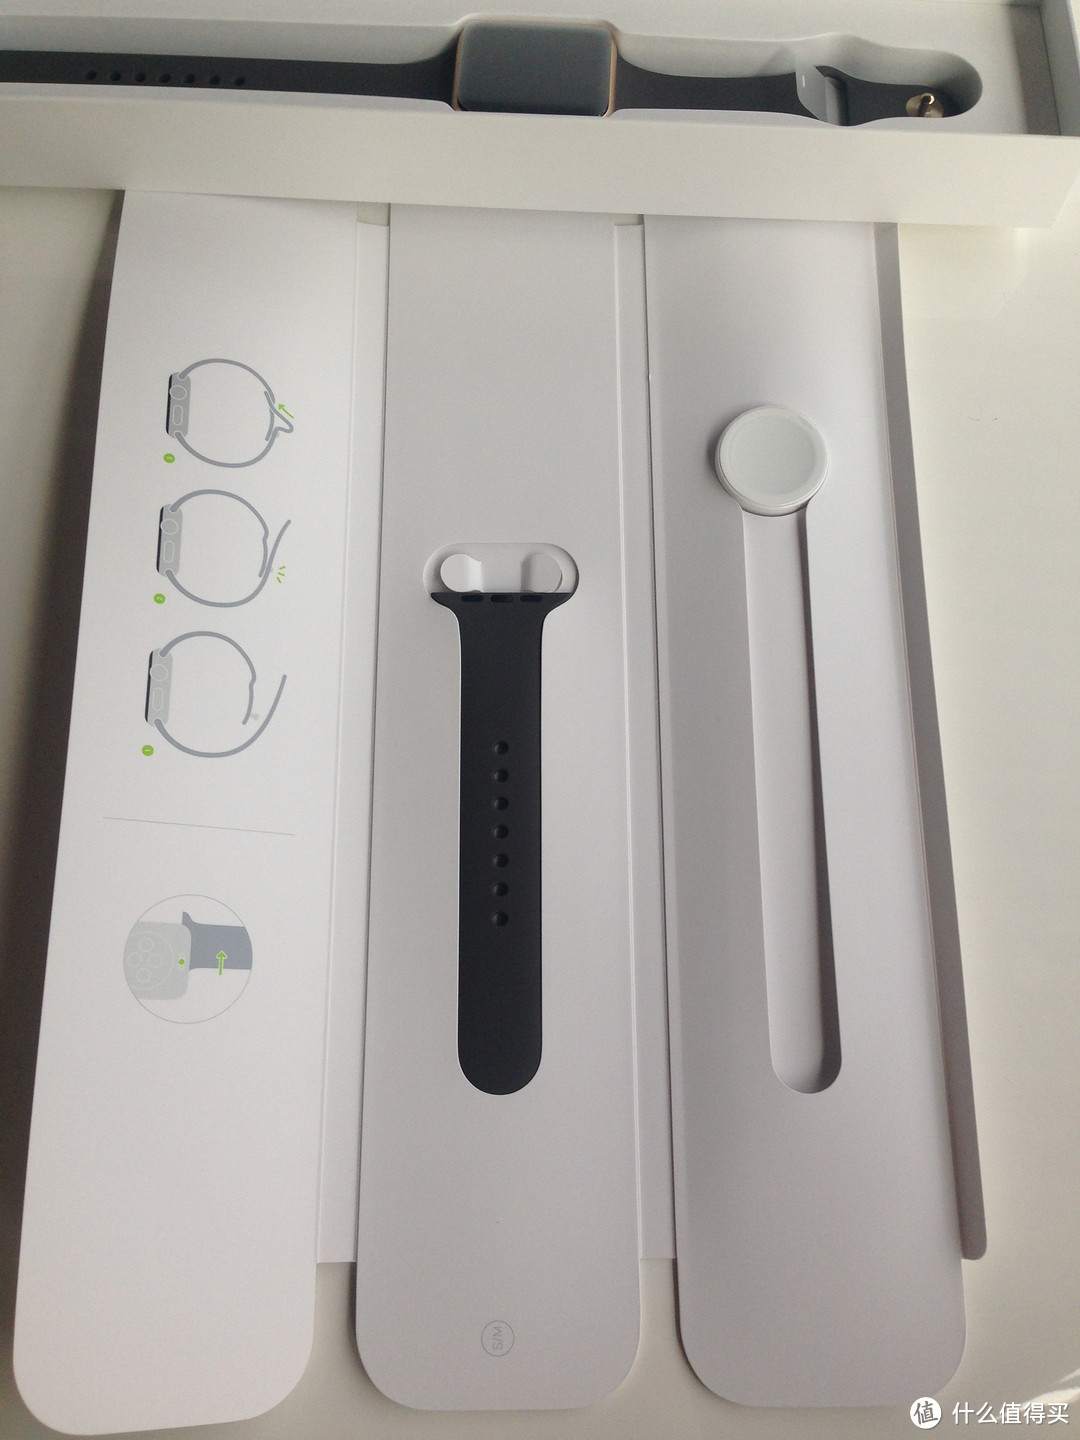 #原创新人# Apple Watch Series1 智能手表 开箱